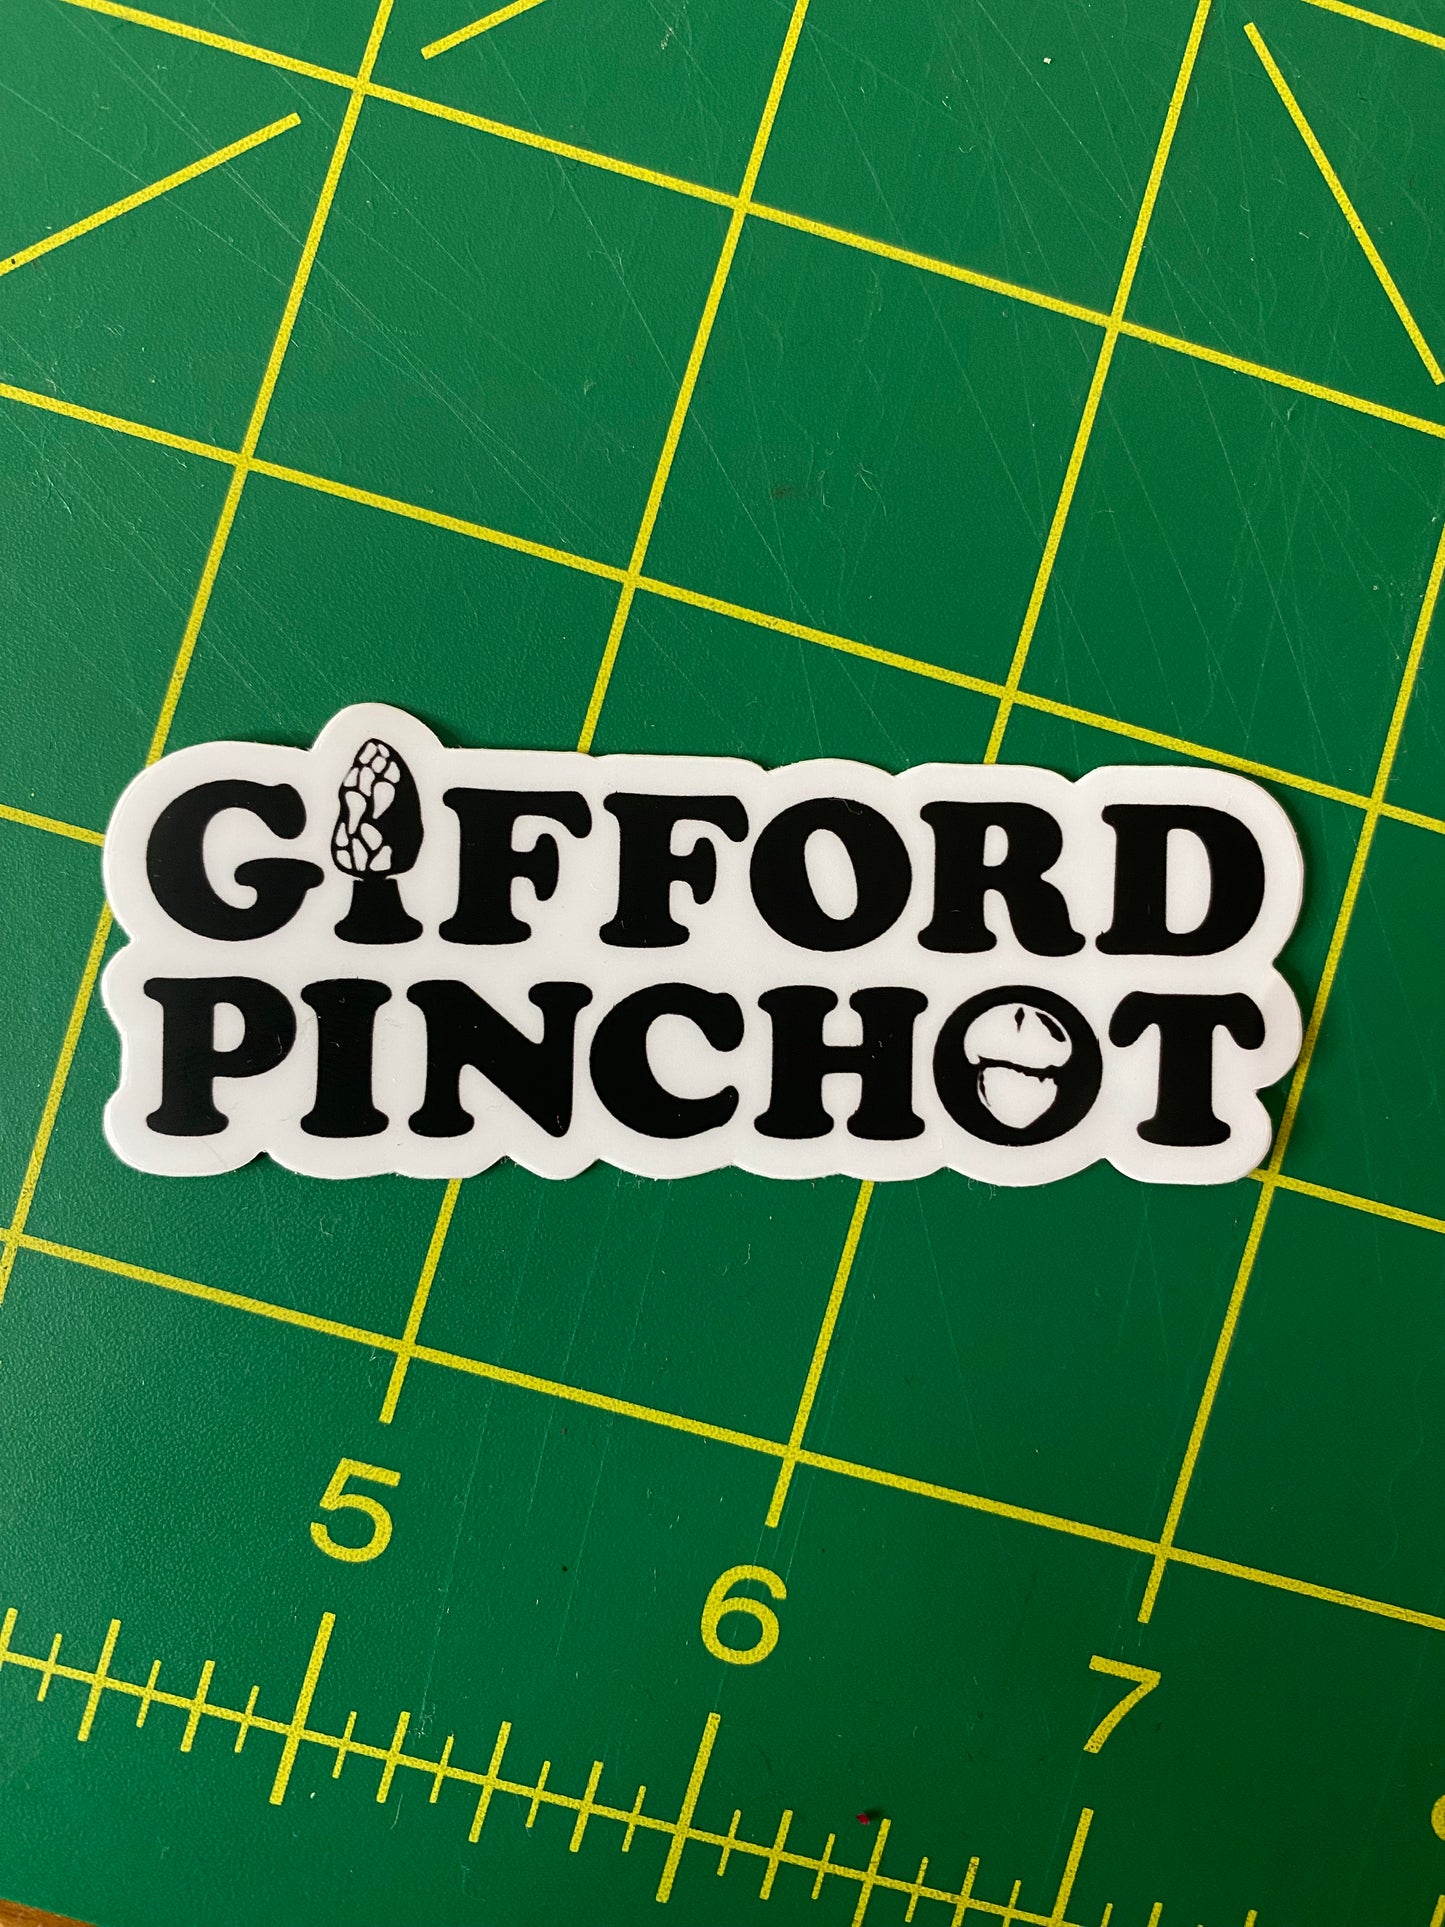 Gifford Pinchot vinyl sticker